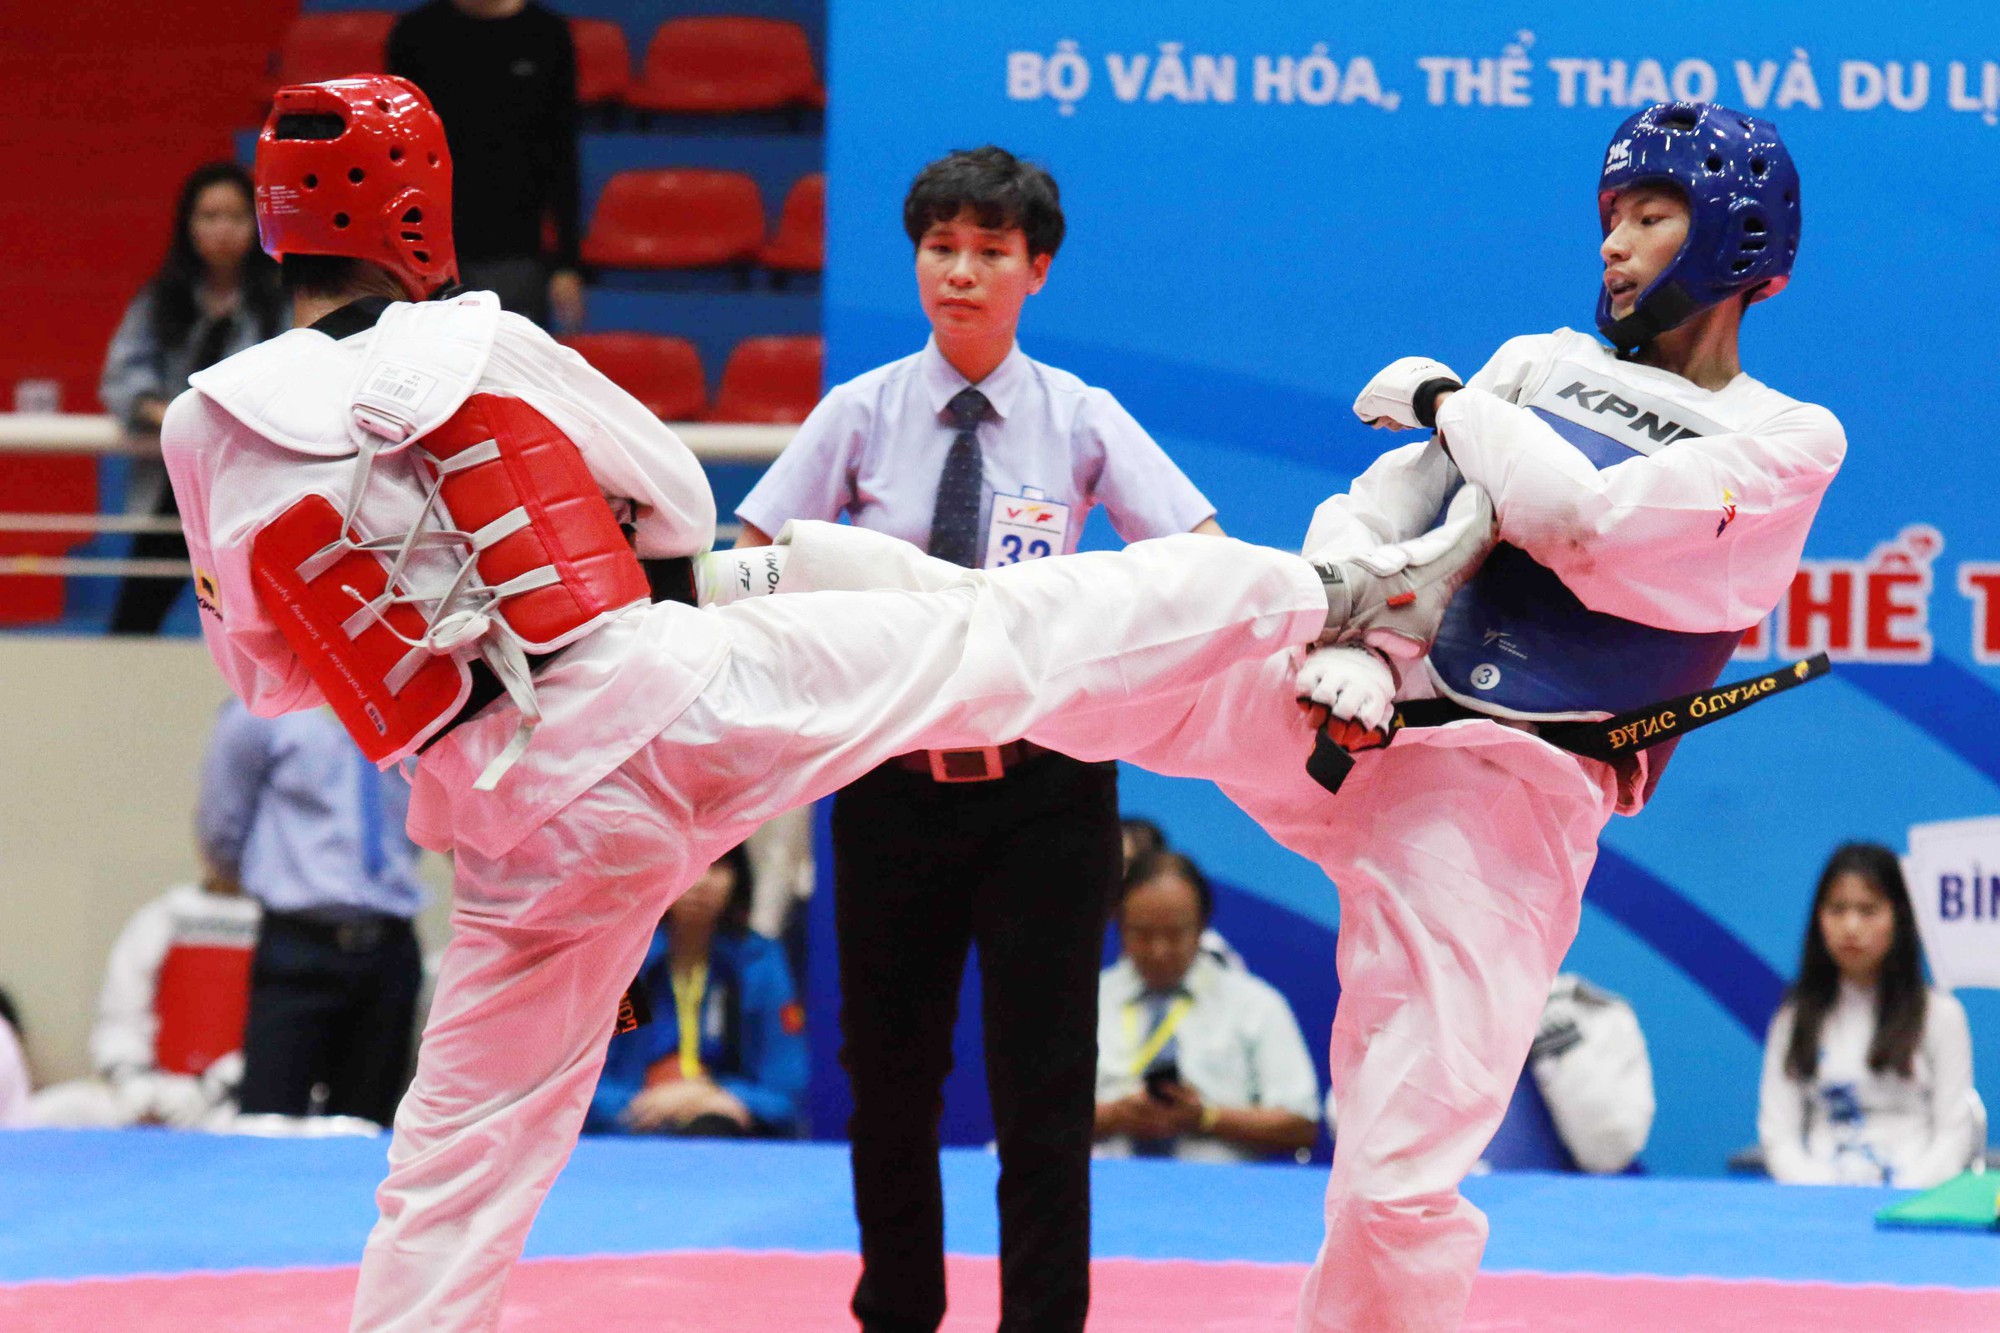 Taekwondo ĐH8: Hồ Thị Kim Ngân đại chiến Trương Thị Kim Tuyền nghẹt thở - Ảnh 4.